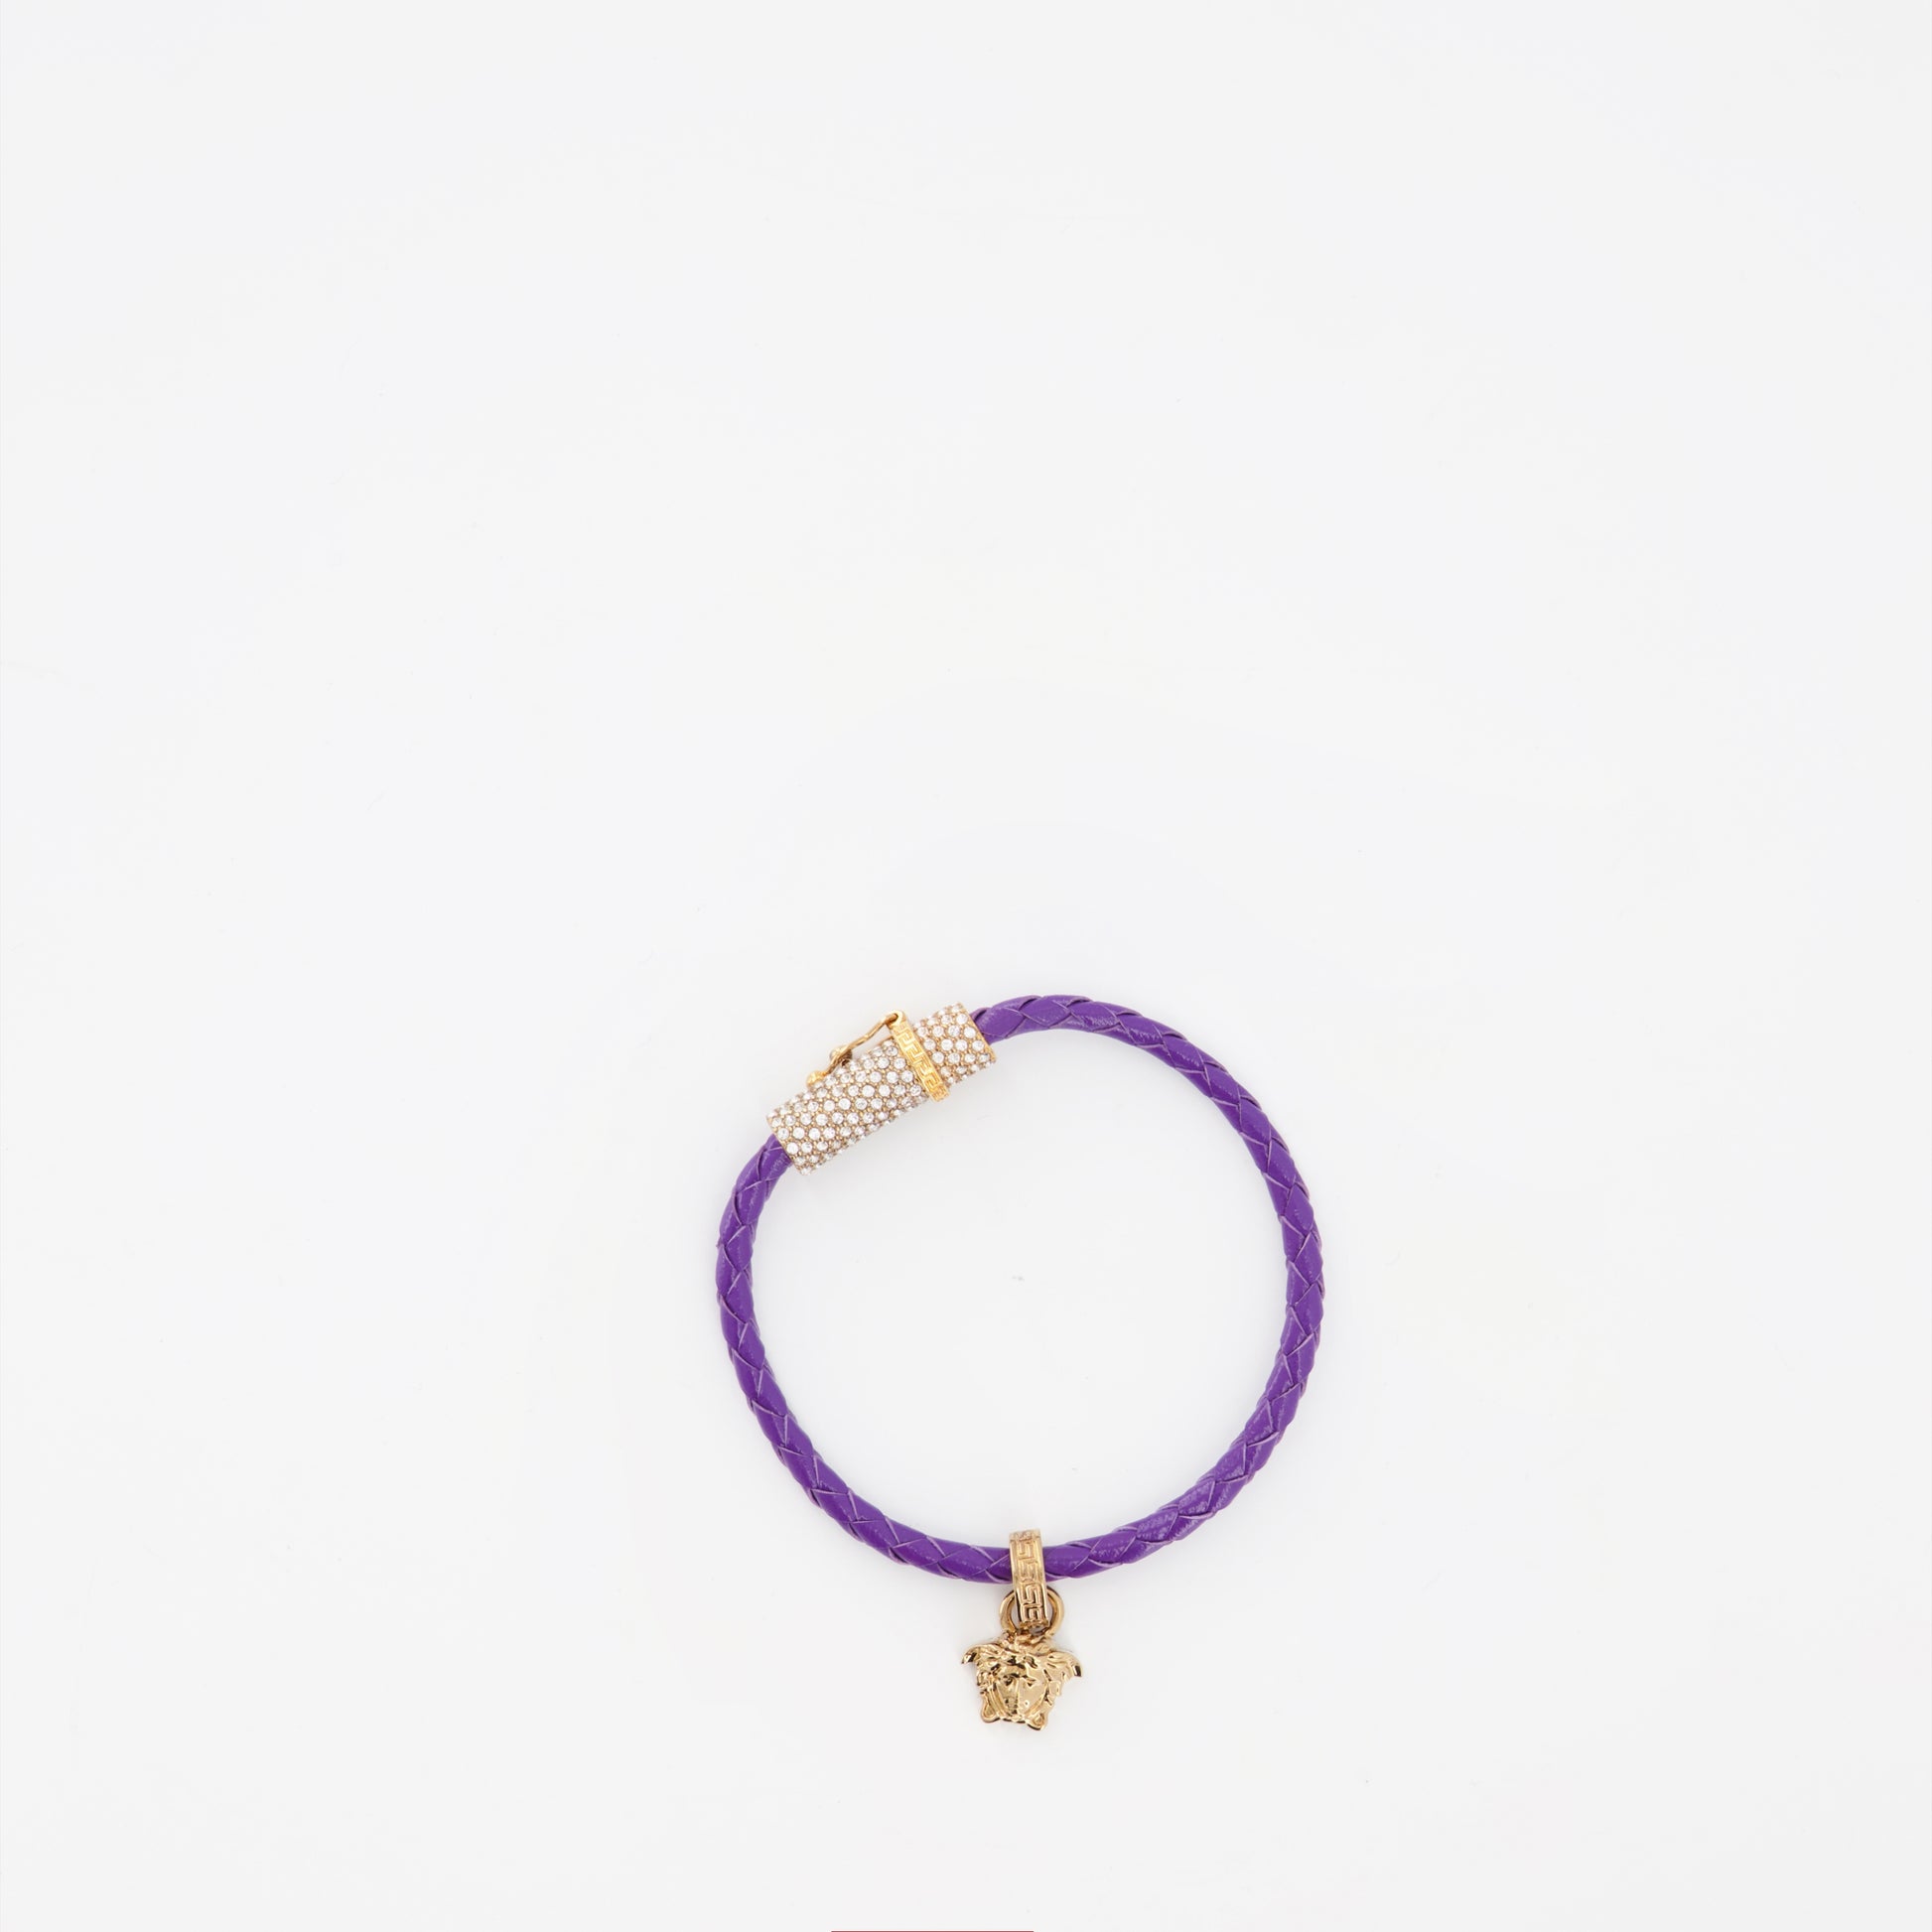 Medusa braided bracelet